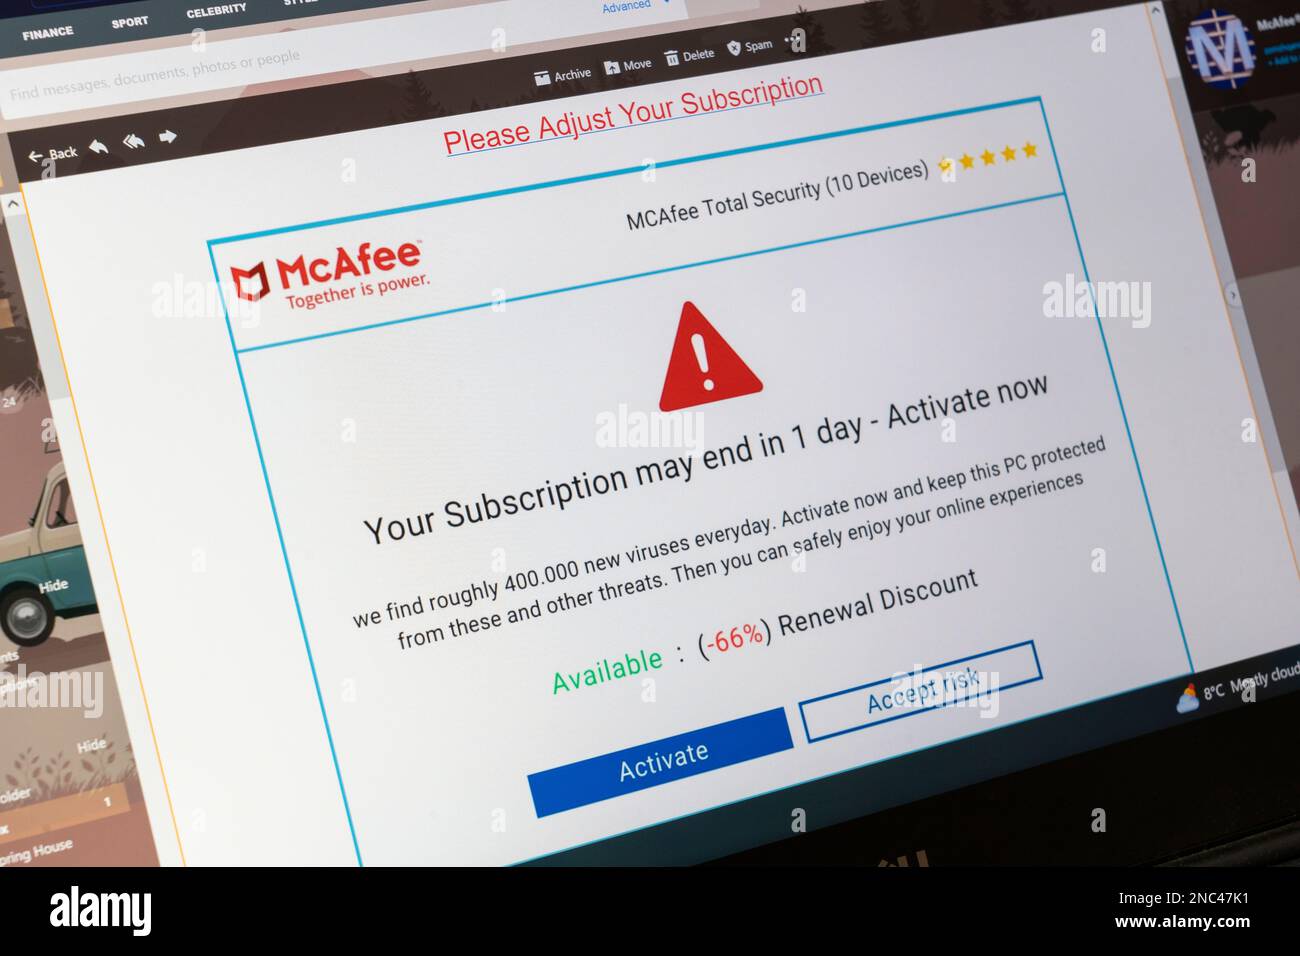 Eine gefälschte McAfee AntiVirus Phishing-E-Mail von Betrügern auf einem Computerbildschirm in England. Konzept: Betrügerische E-Mails, betrügerische E-Mails, betrügerische E-Mails, Betrug in Großbritannien Stockfoto